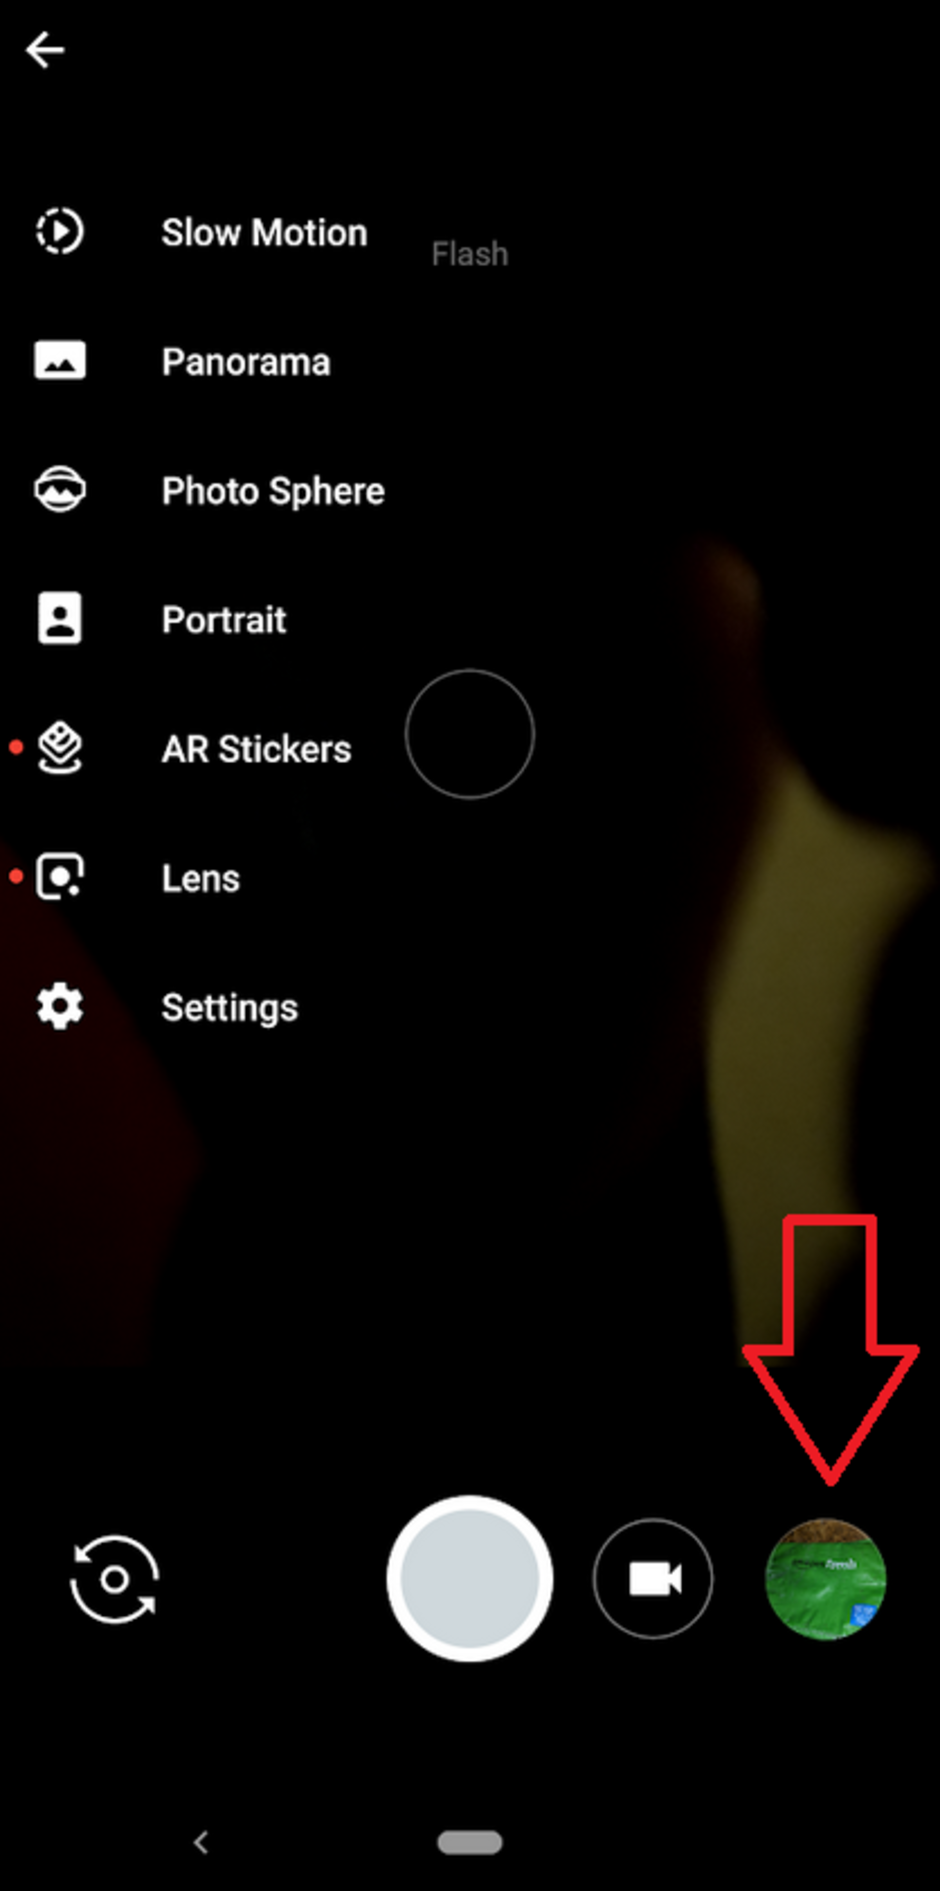 Le immagini scompaiono quando si tocca il cerchio della galleria dell'app della fotocamera - Il bug su tutte le serie Pixel e su altri telefoni Android impedisce il salvataggio delle immagini